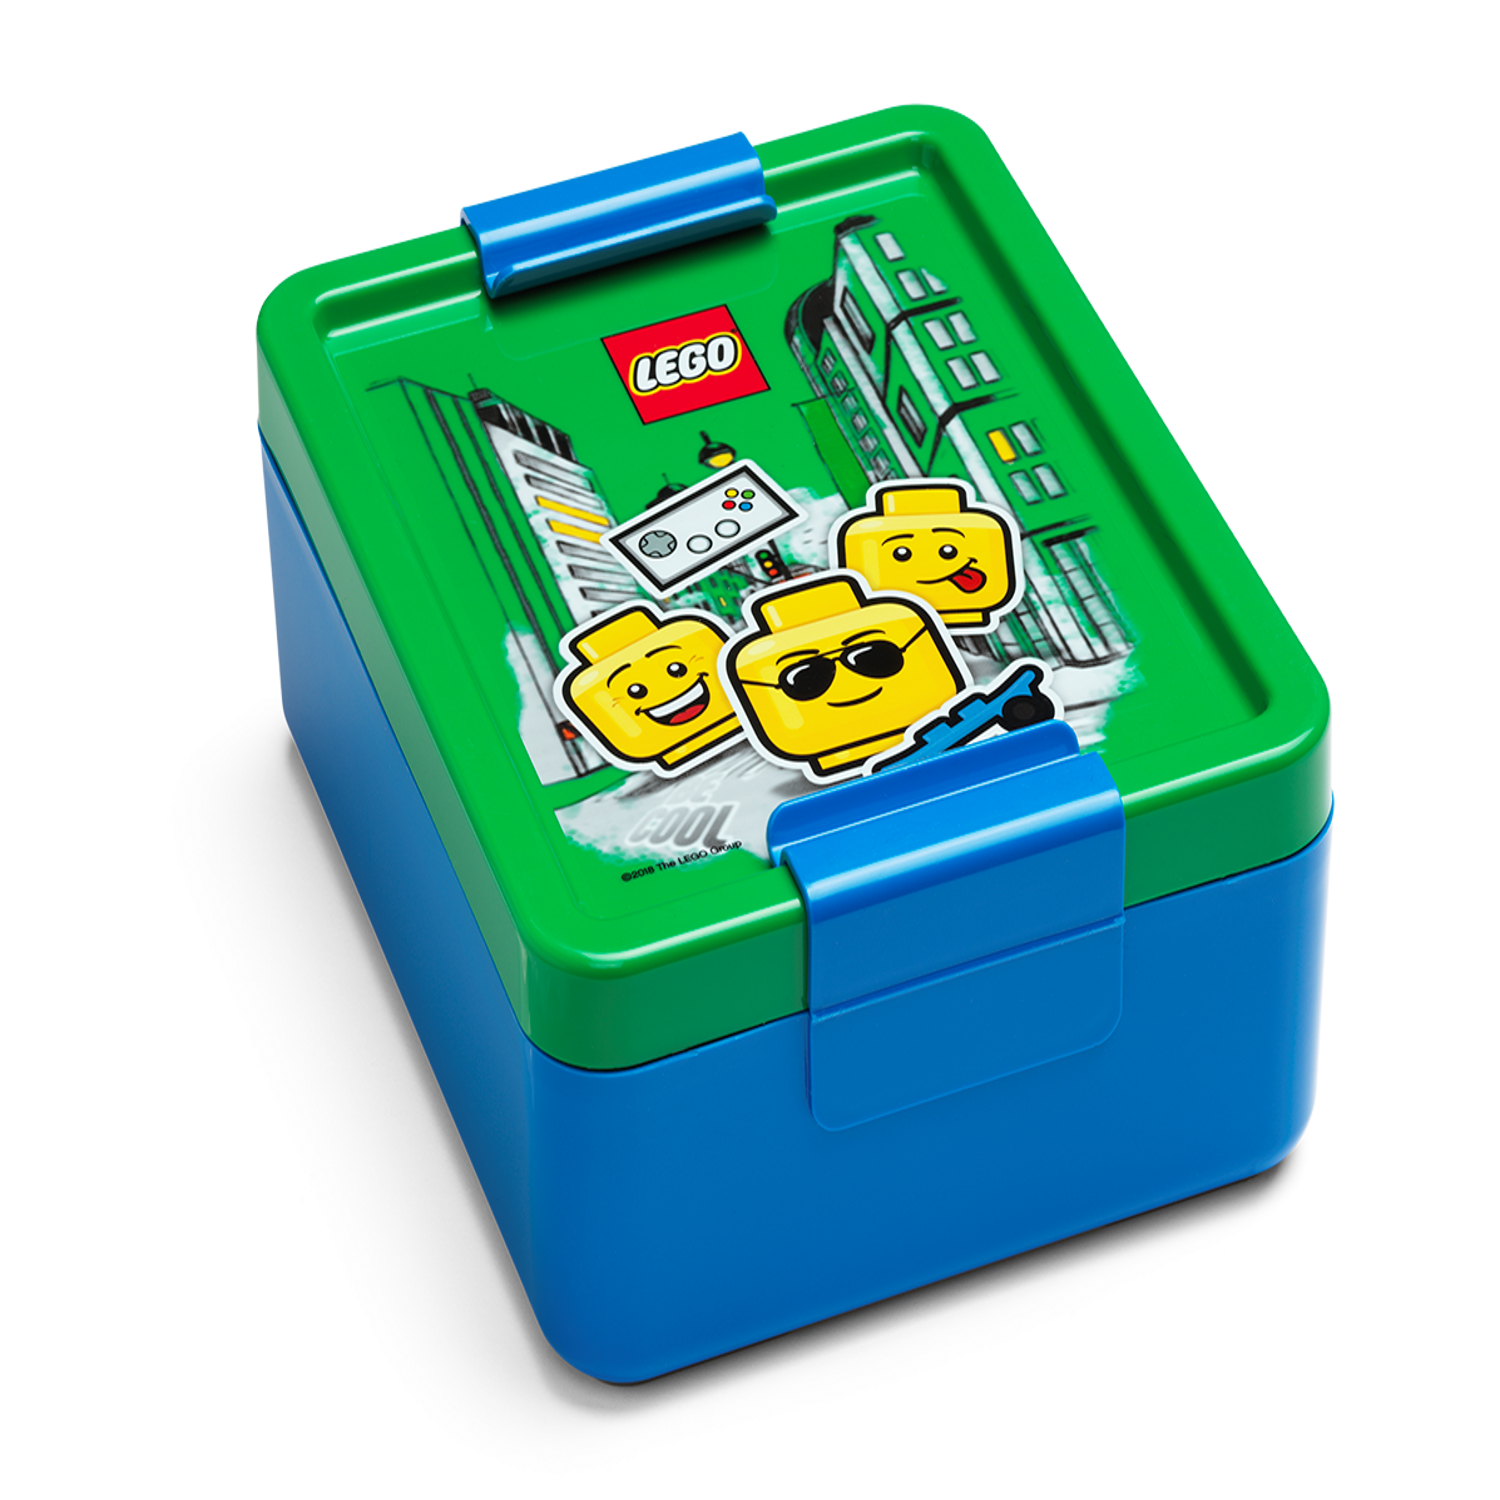 Lego Star Wars Boy's Girl's Adult Soft Insulated School Lunch Box SLCOD86YT  